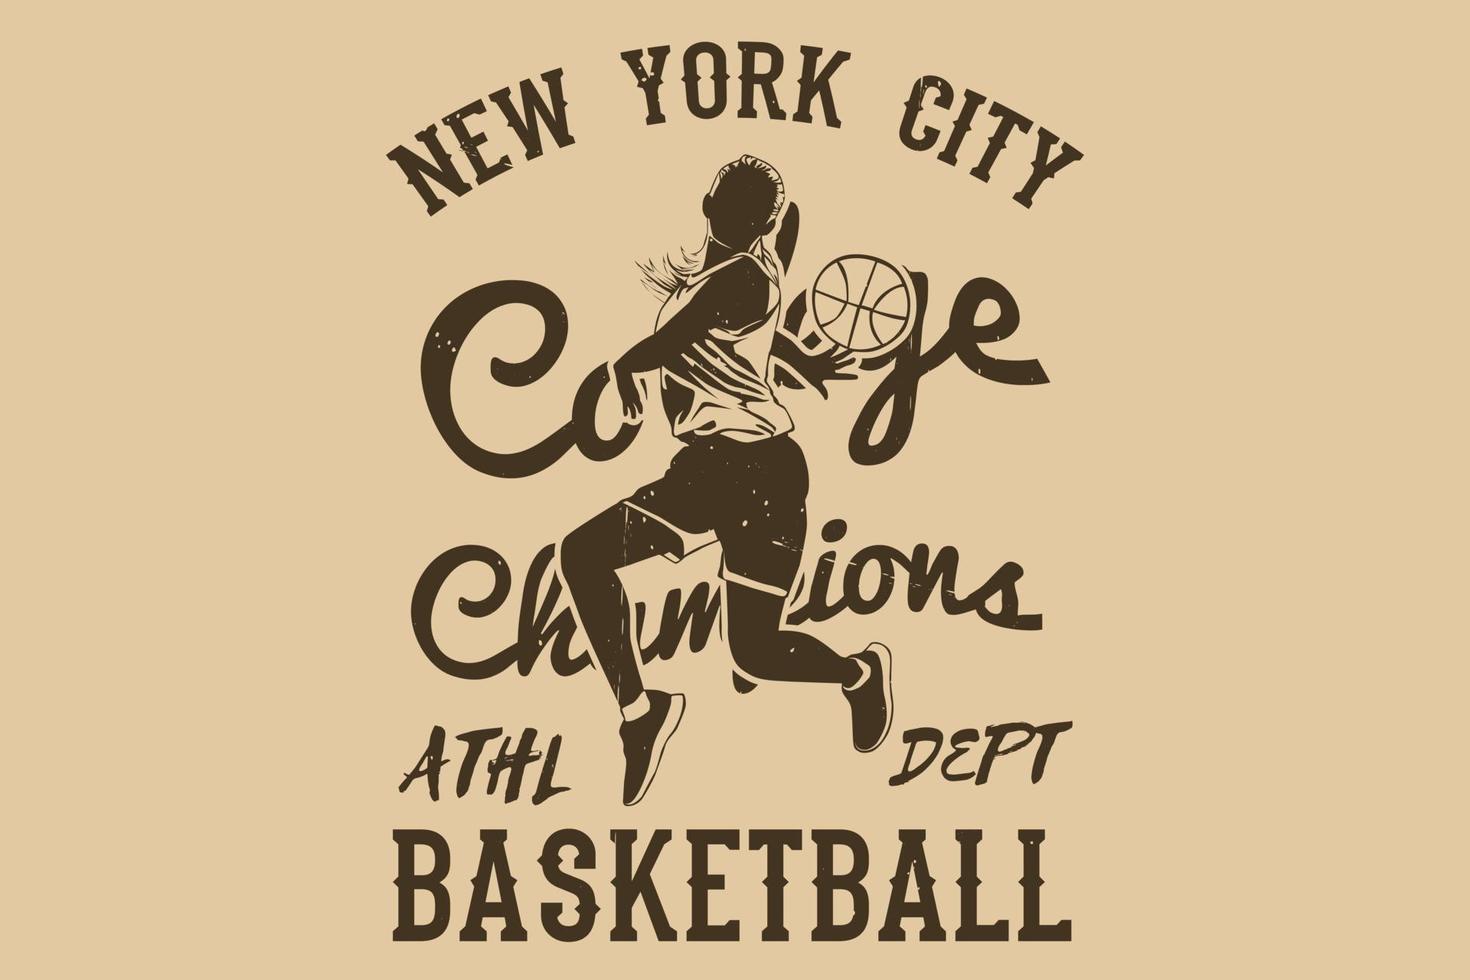 diseño de silueta de baloncesto de los campeones universitarios de la ciudad de nueva york vector